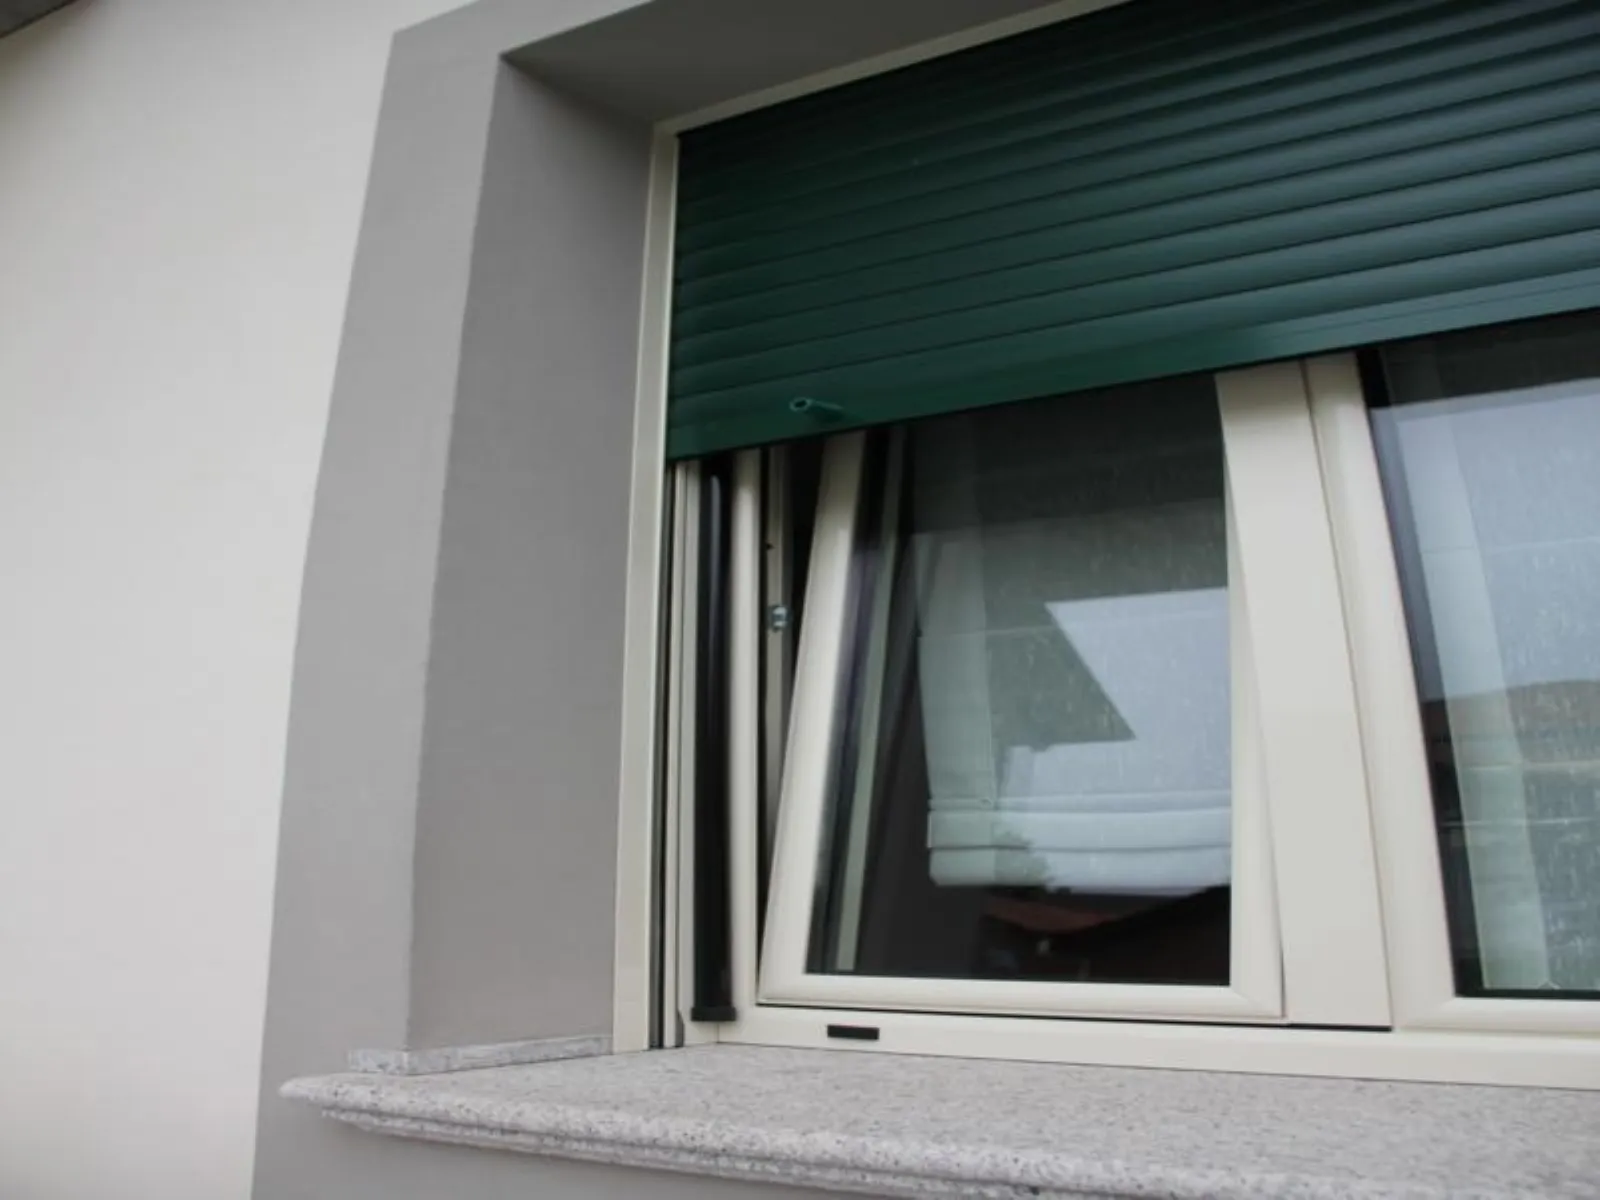 Le tapparelle migliori per la casa moderna finestre for Finestre elettriche